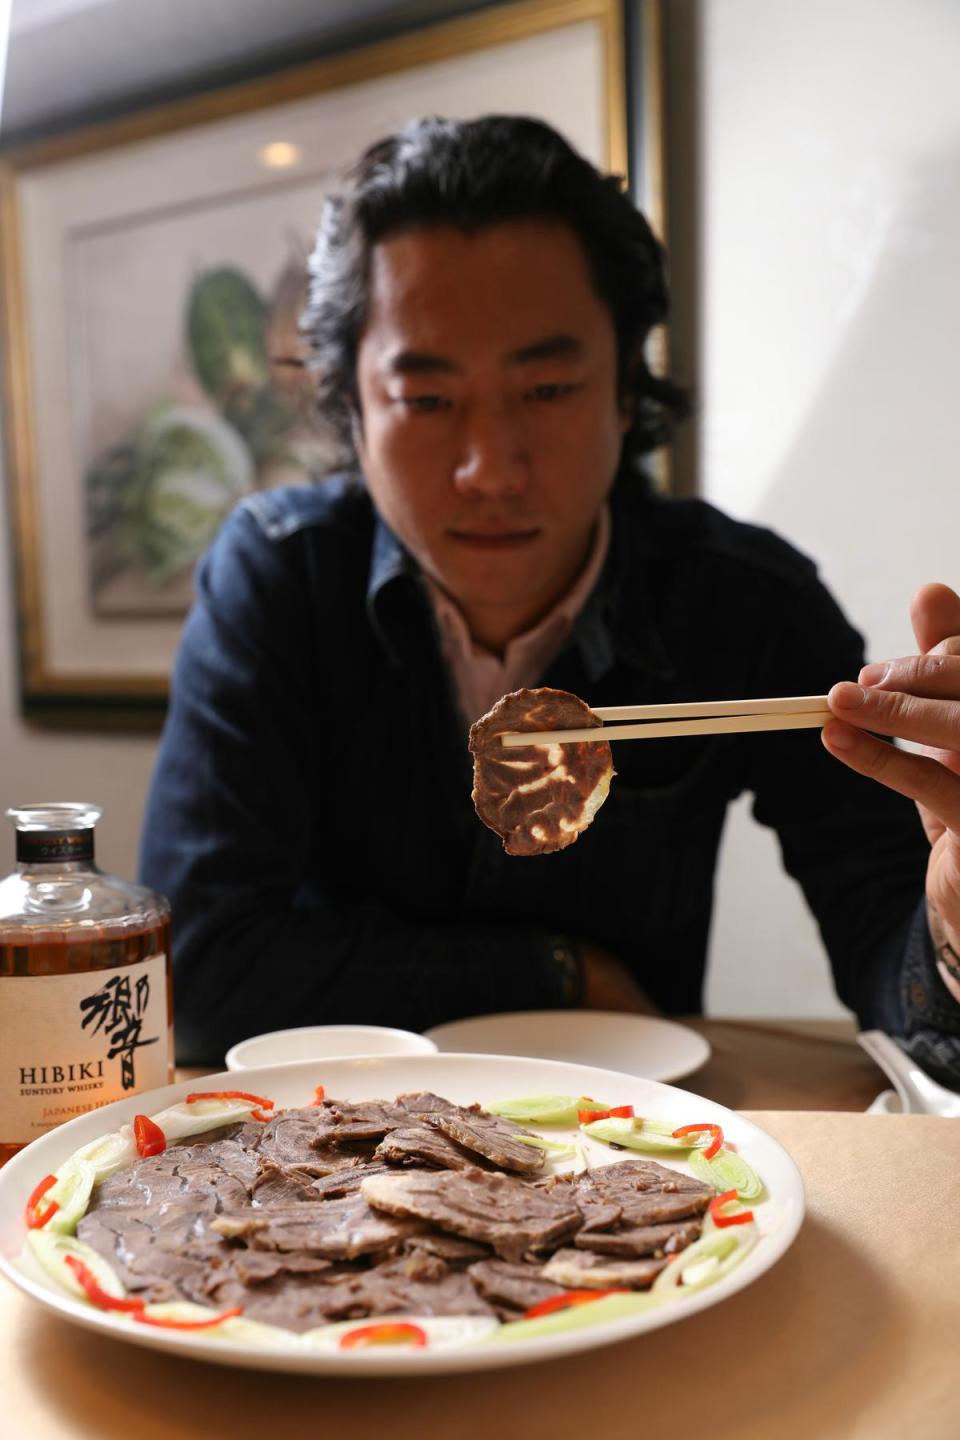 鼎珍坊滷牛腱（480元／份）肉嫩筋多香氣足，是尹德凱吃過最接近記憶中老味道的。搭配細緻平衡的響威士忌（1,300元／瓶）